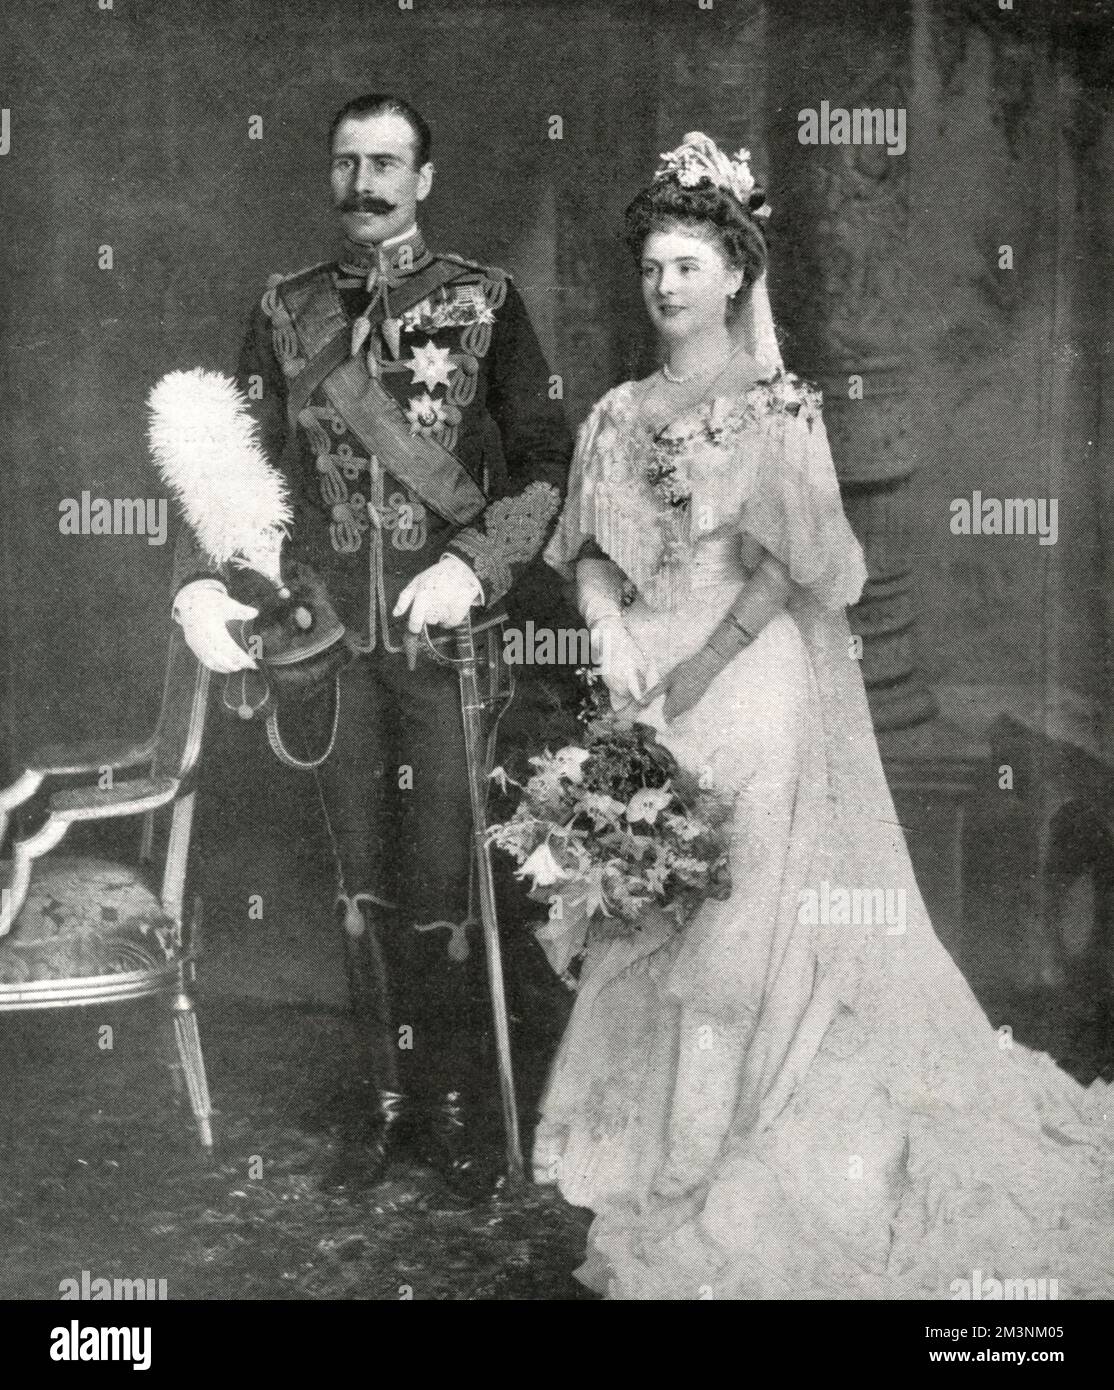 La princesa Alicia de Albany, más tarde condesa de Athlone (1883-1981) y el príncipe Alejandro de Teck, más tarde Alexander Cambridge, 1st conde de Athlone (1874-1957), fotografiados el día de su boda. La boda tuvo lugar el 10 de febrero de 1904 en la Capilla de San Jorge, Windsor. Fecha: 10 de febrero de 1904 Foto de stock